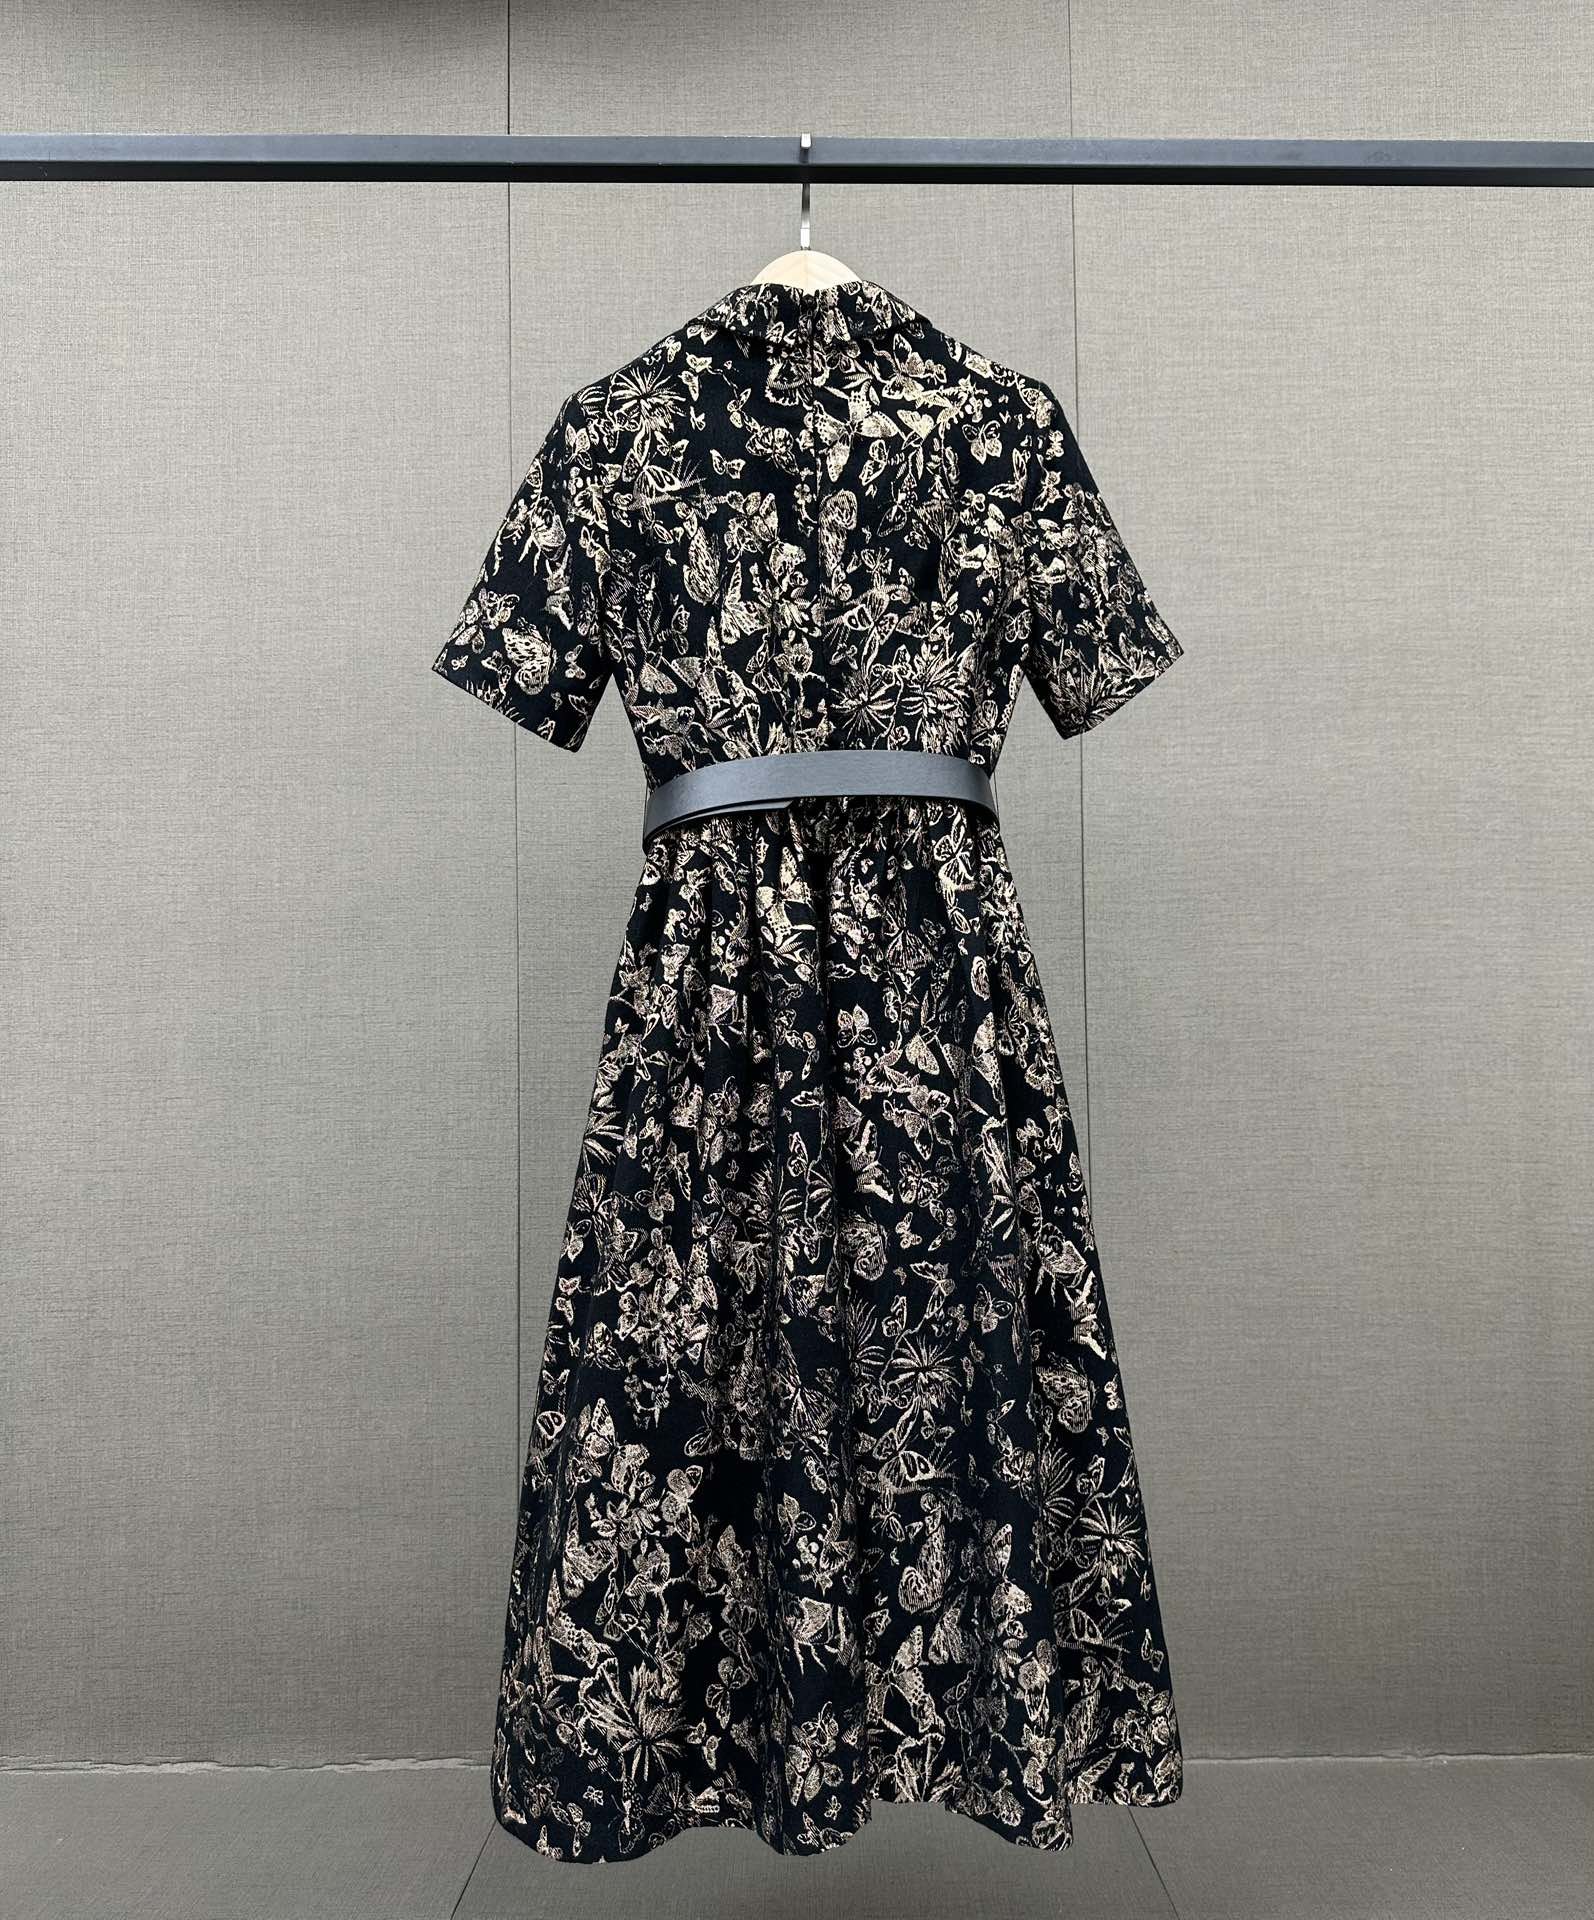 典雅的印花设计带有丝丝复古韵味摩登有腔调感这款Dior连衣裙它能悄悄变得更有价值感精致的版型不刻意的就将